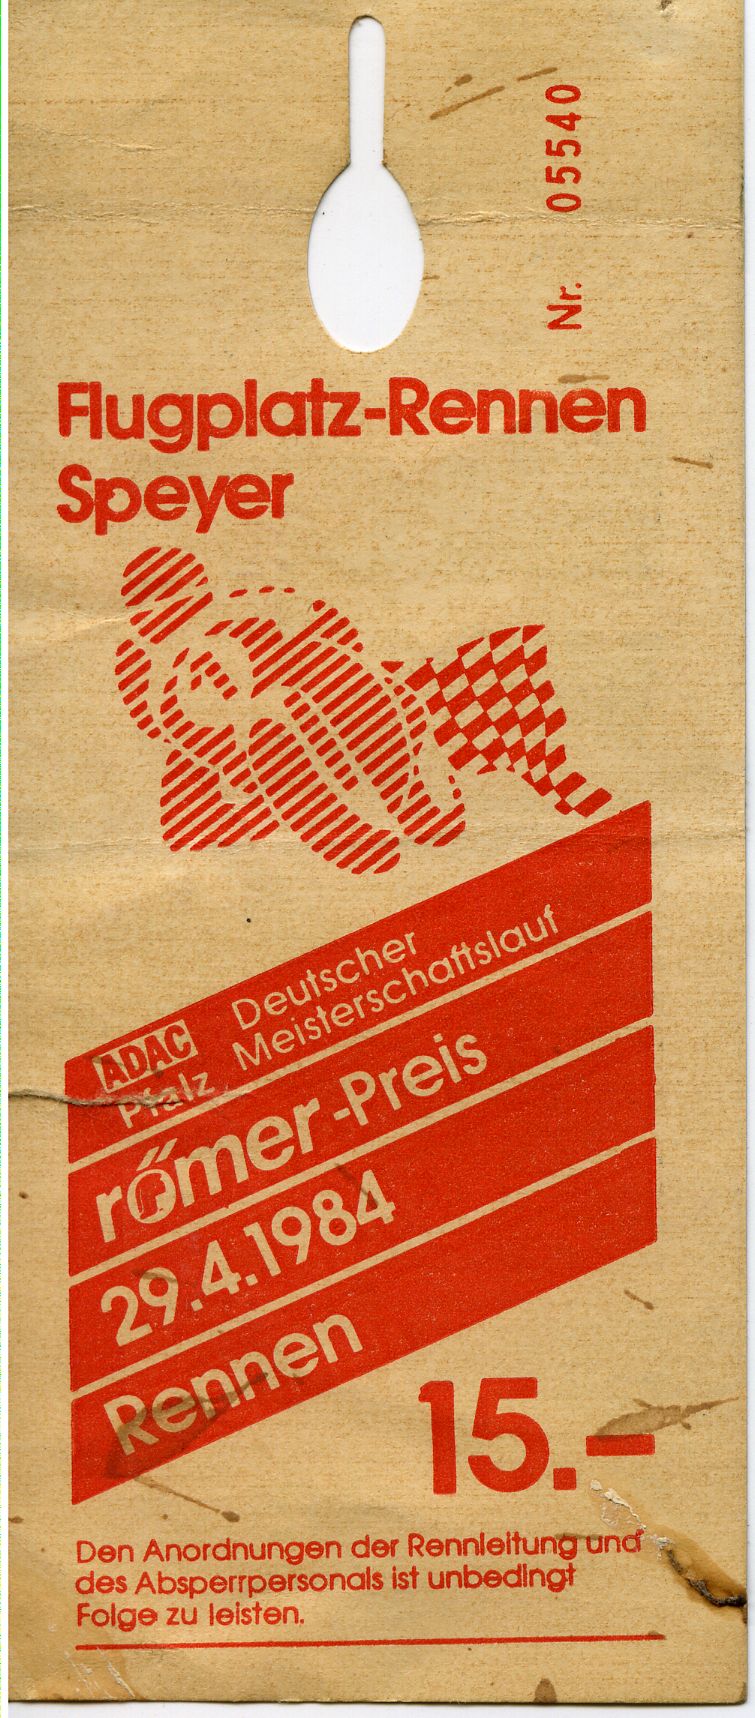 Flugplatzrennen Speyer 1984.jpg